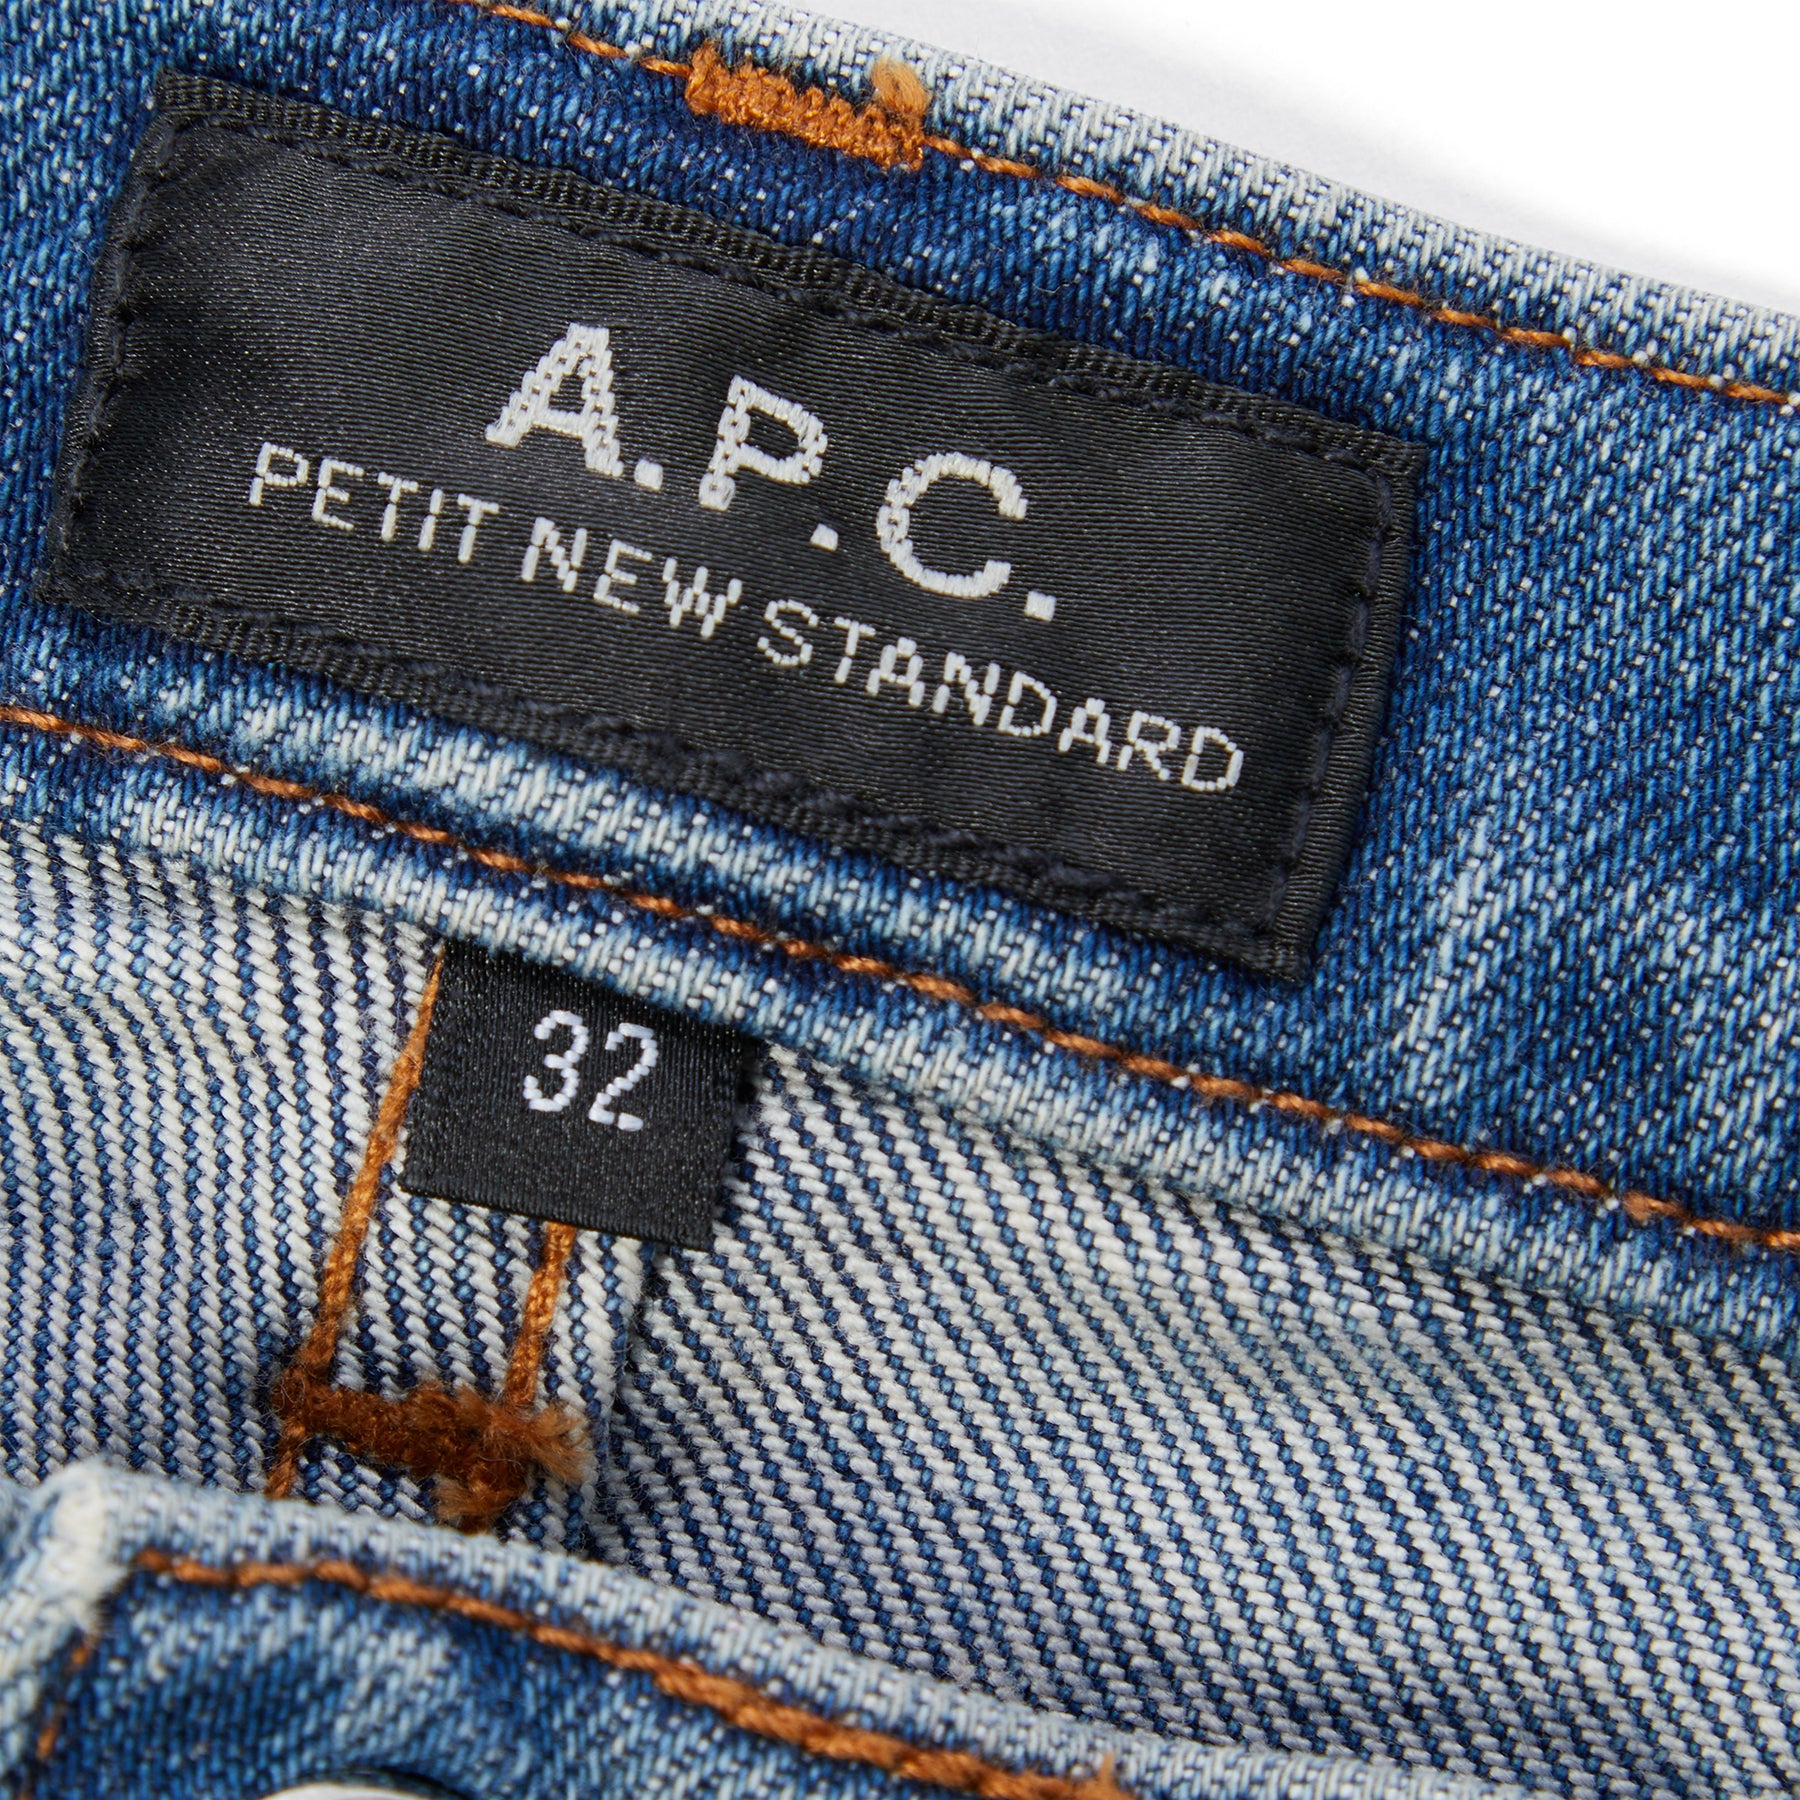 A.P.C. Jean Petit New Standard (Indigo) – Concepts